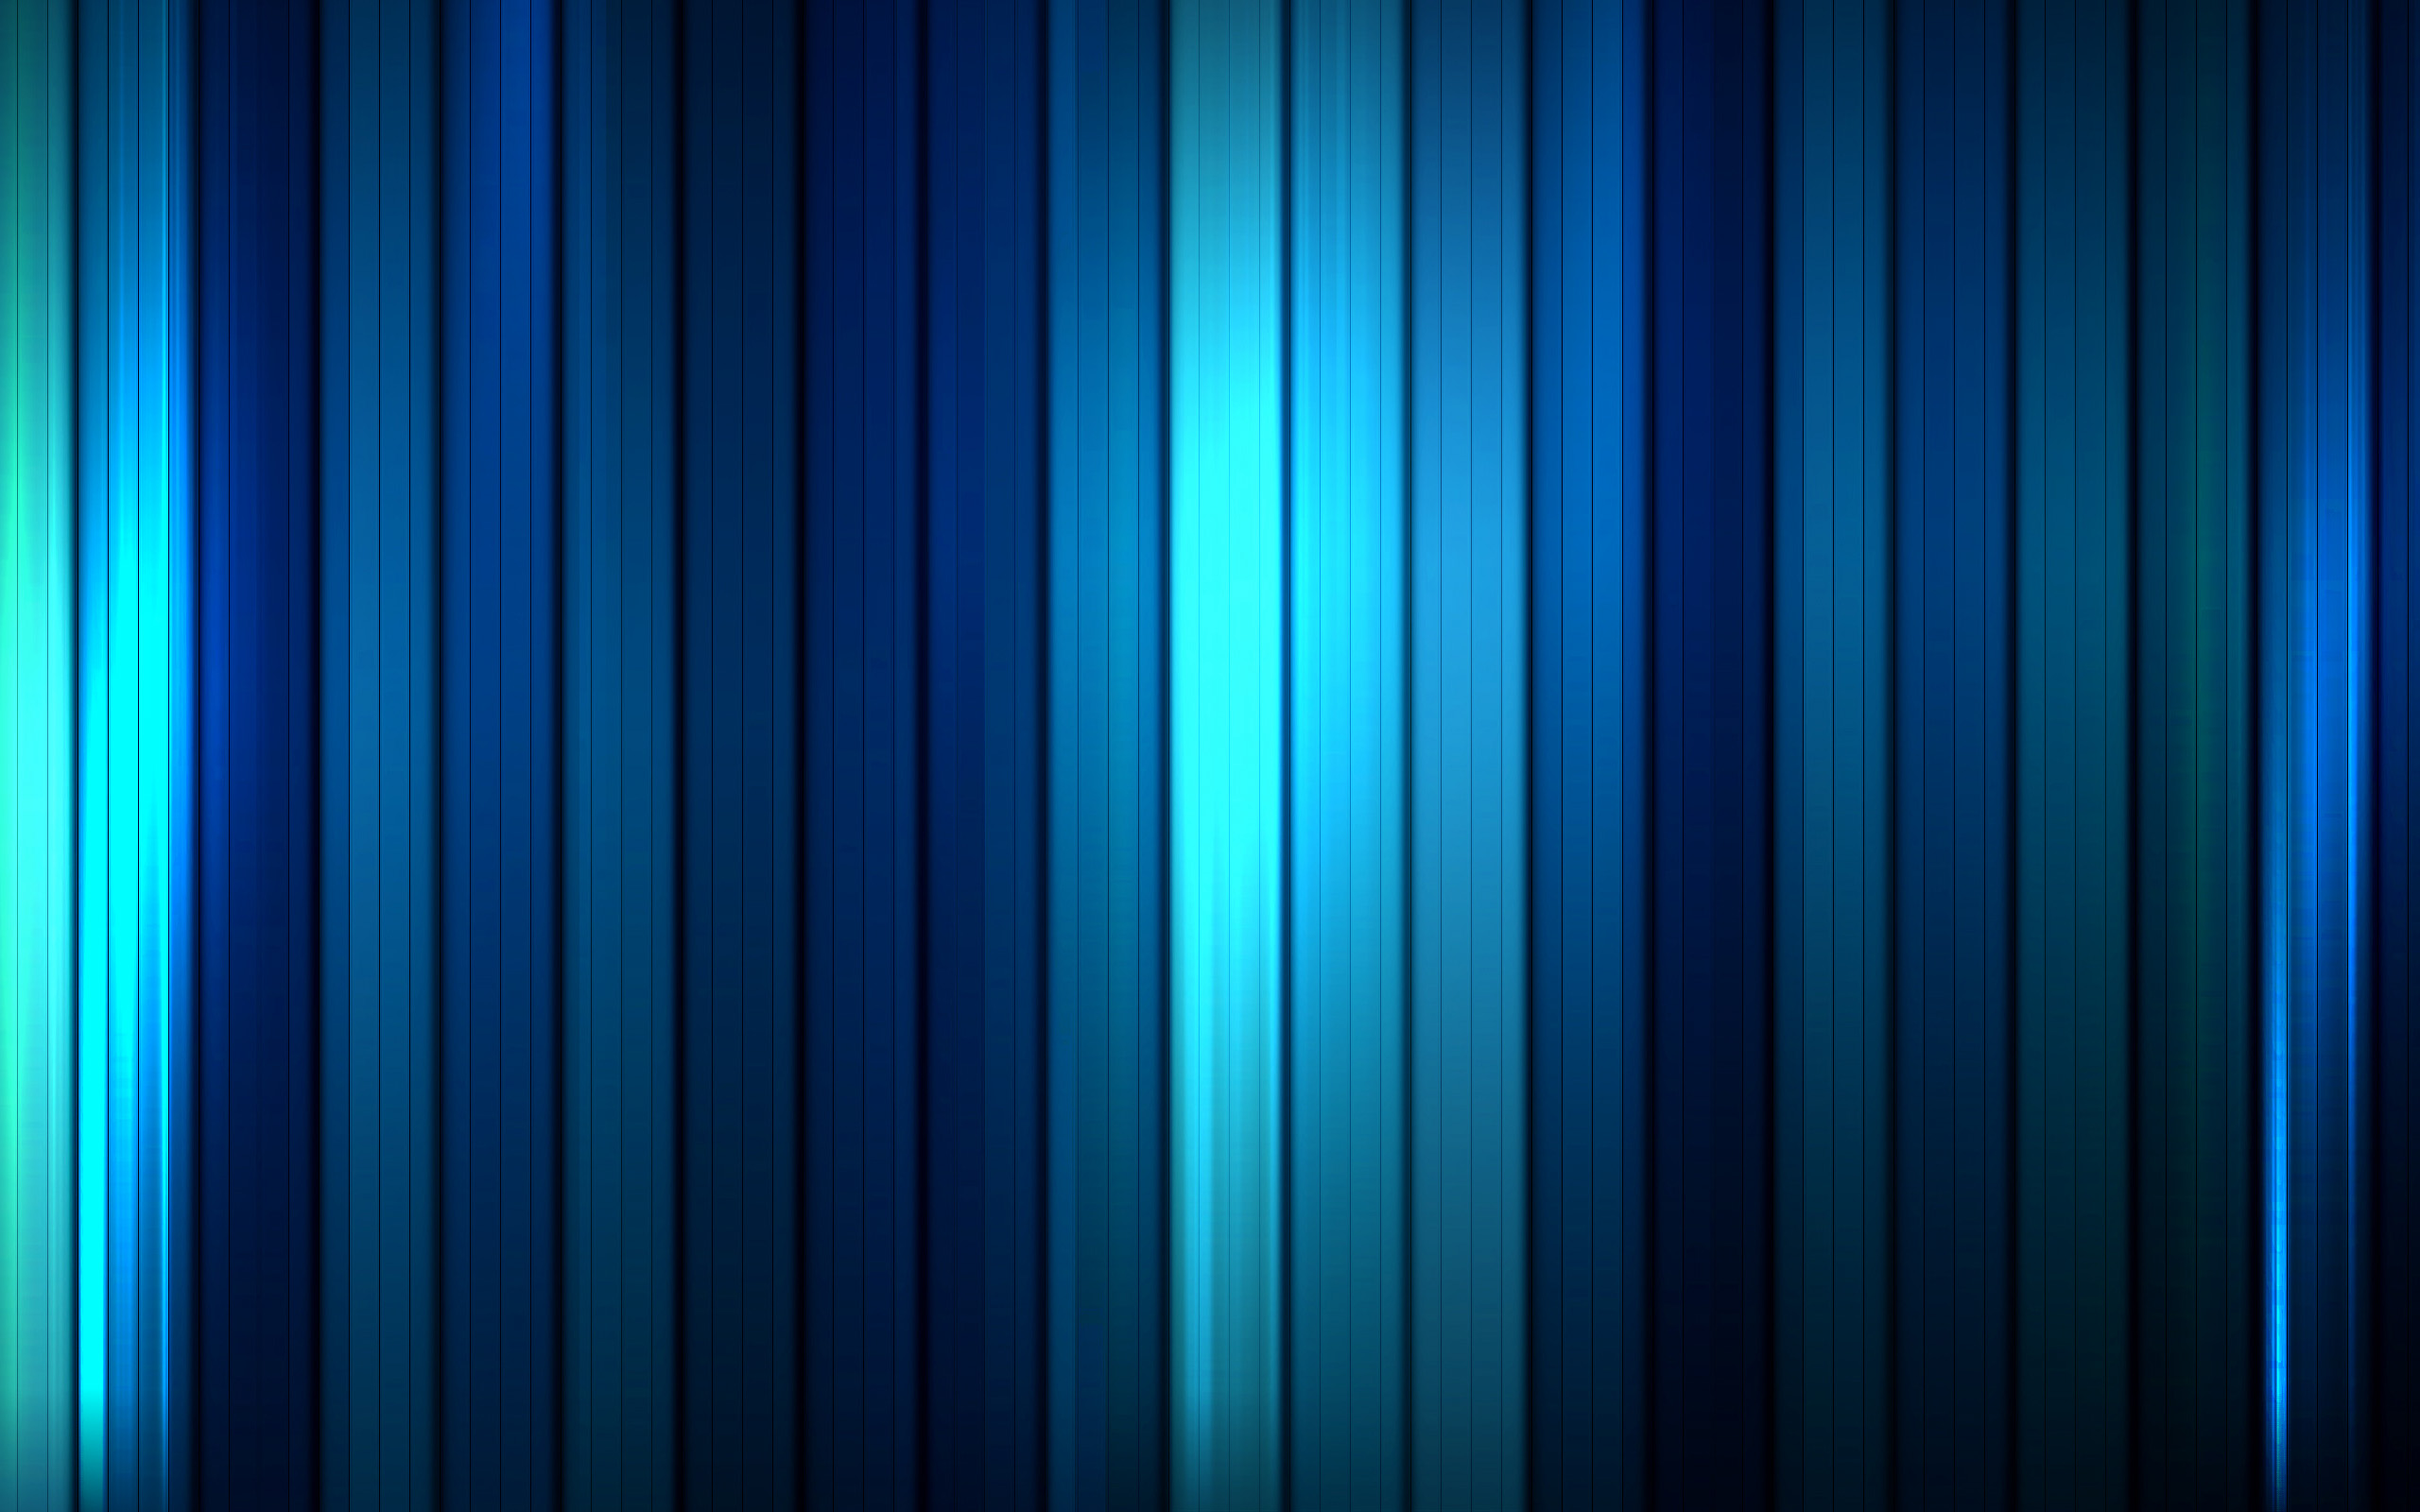 вертикальные синие полосы, полоски, текстура, blue vertical lines texture, backgrounds, фон для сайта